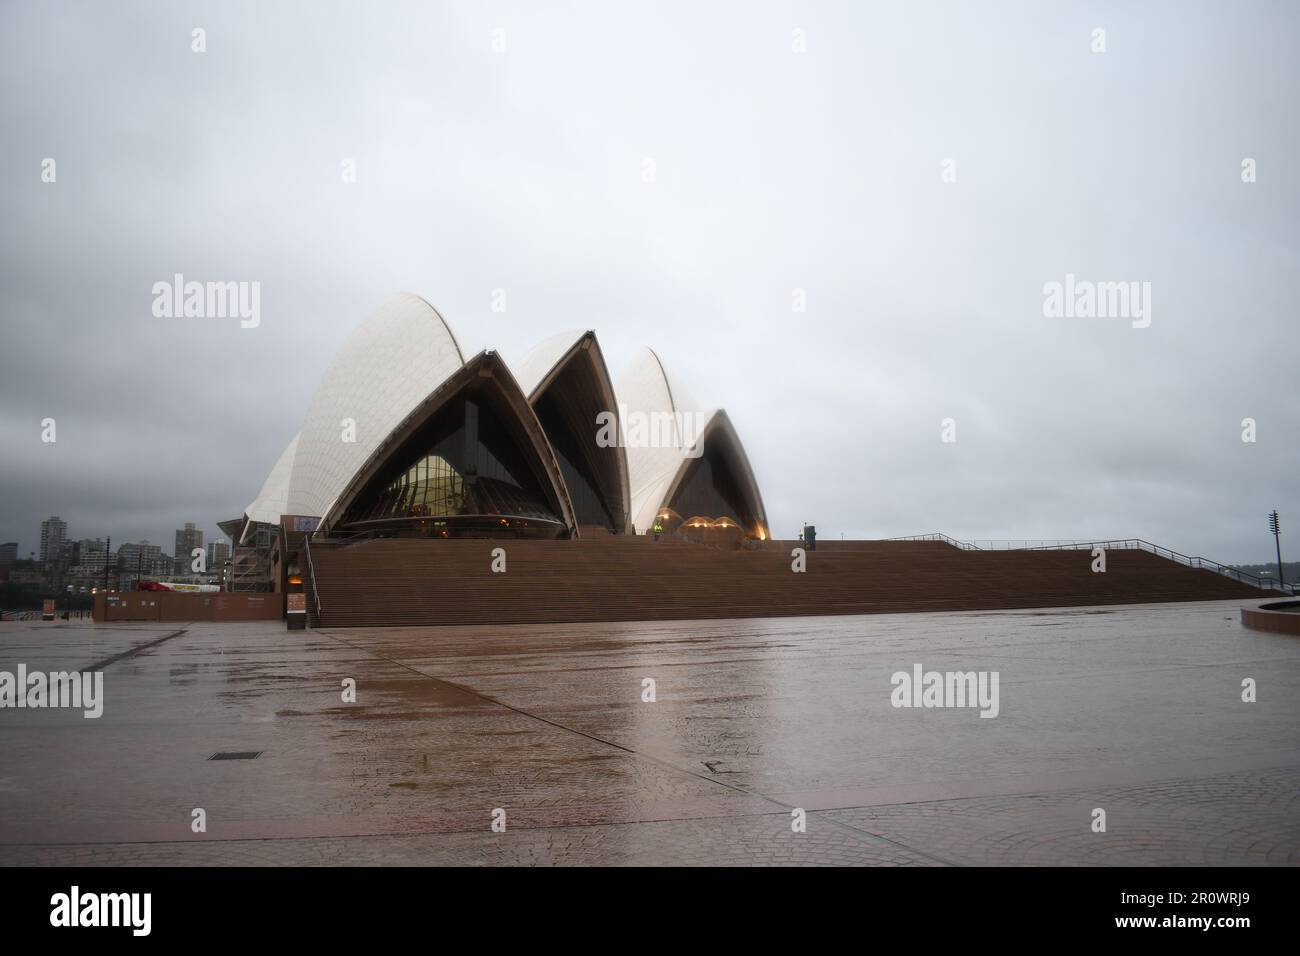 Le meilleur opéra de Sydney par jour de pluie à COVID-19 sans personne ni visiteur le rend différent. Opéra de Sydney par temps nuageux et pluvieux. Banque D'Images